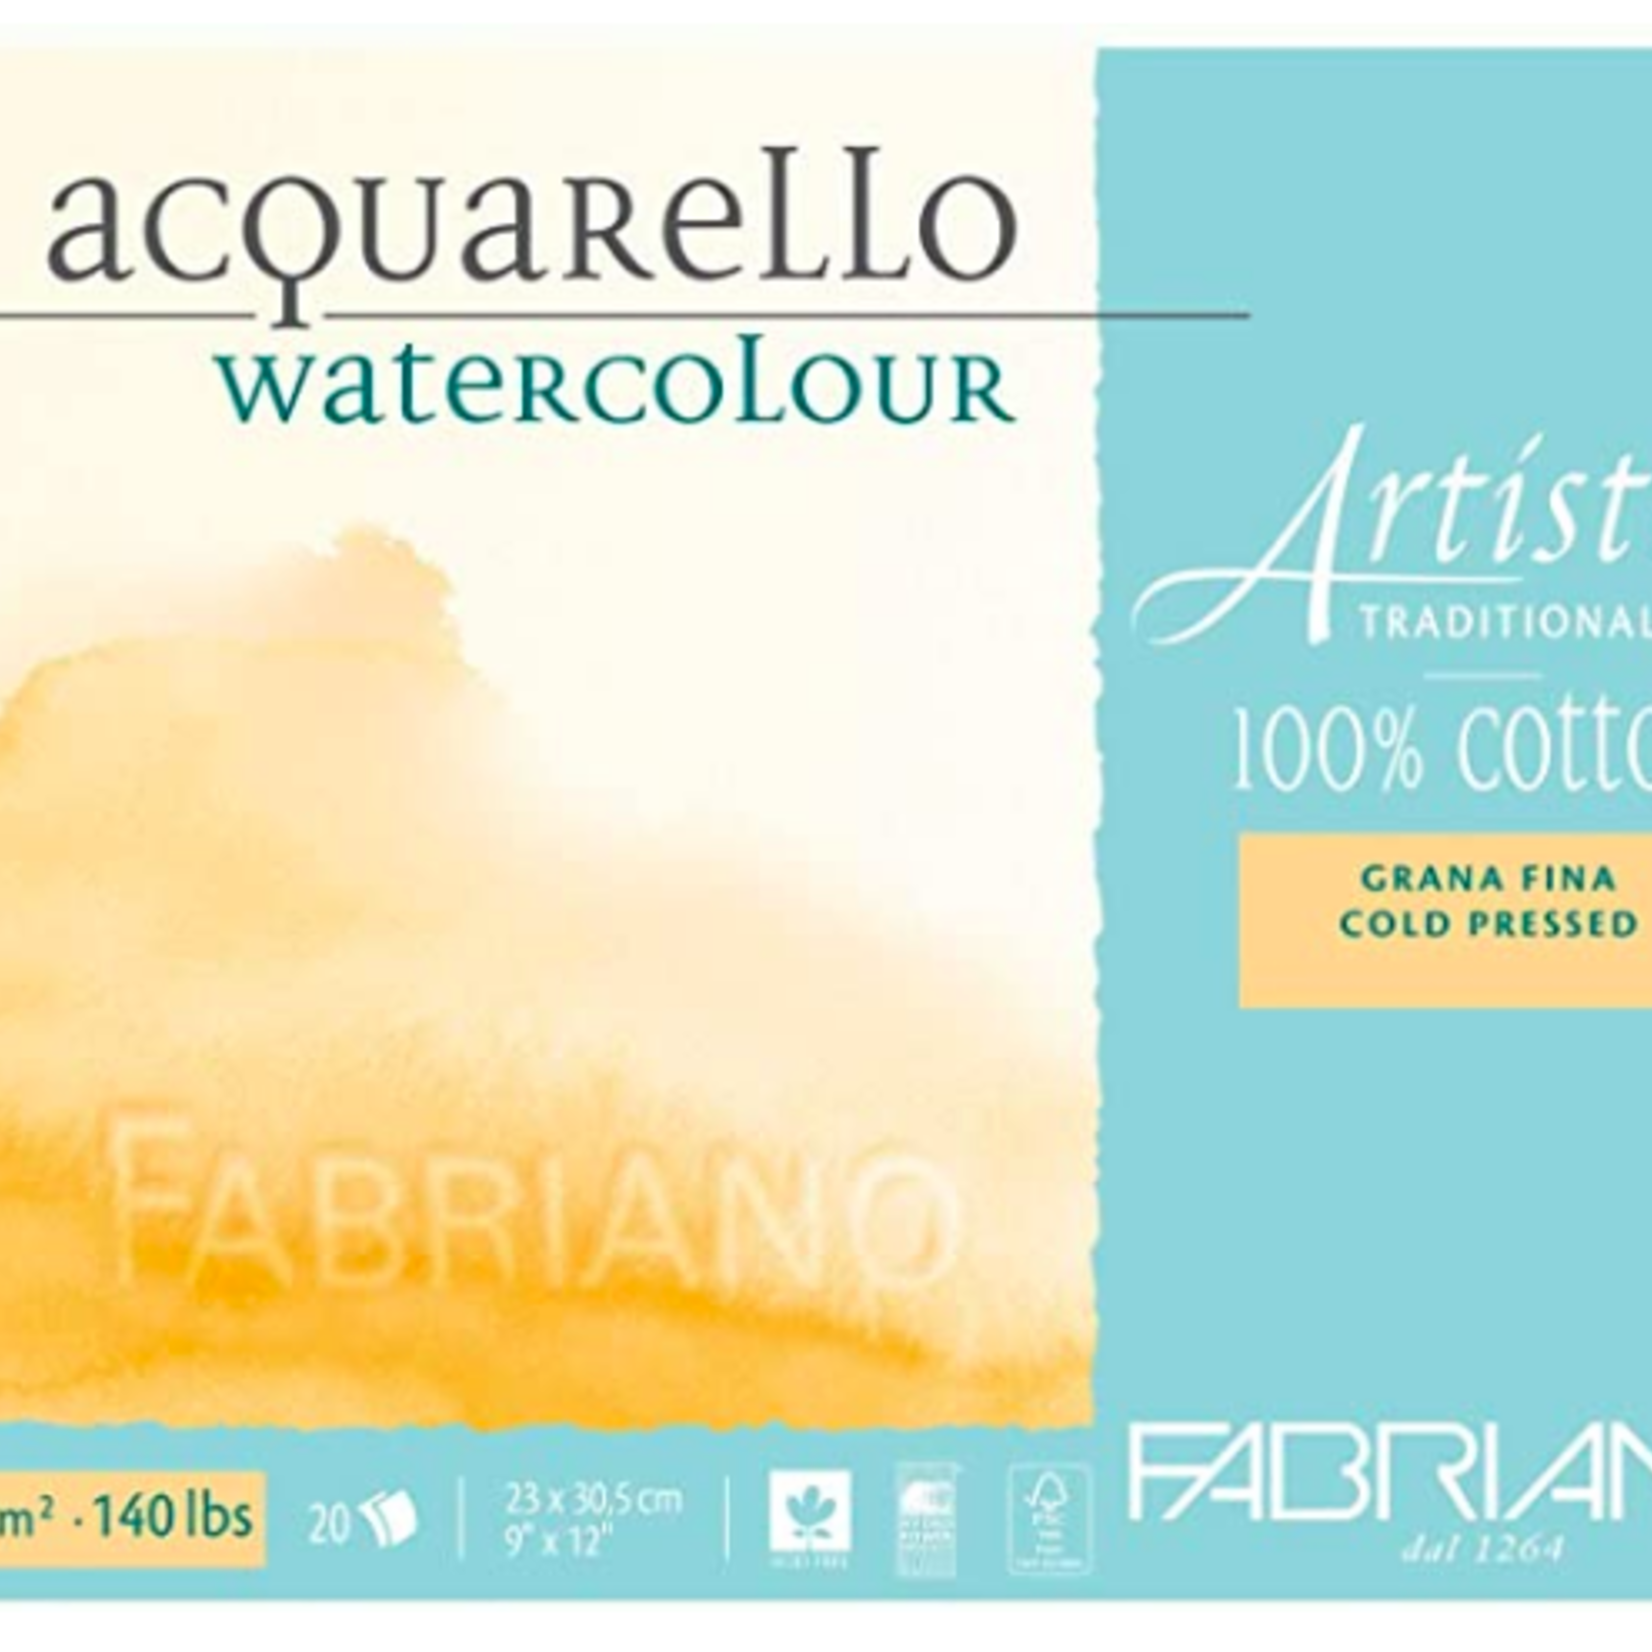 FABRIANO ARTISTICO WATERCOLOUR BLOCK 140LB COLD PRESS 18X24 10/SHEETS TRADITIONAL WHITE*